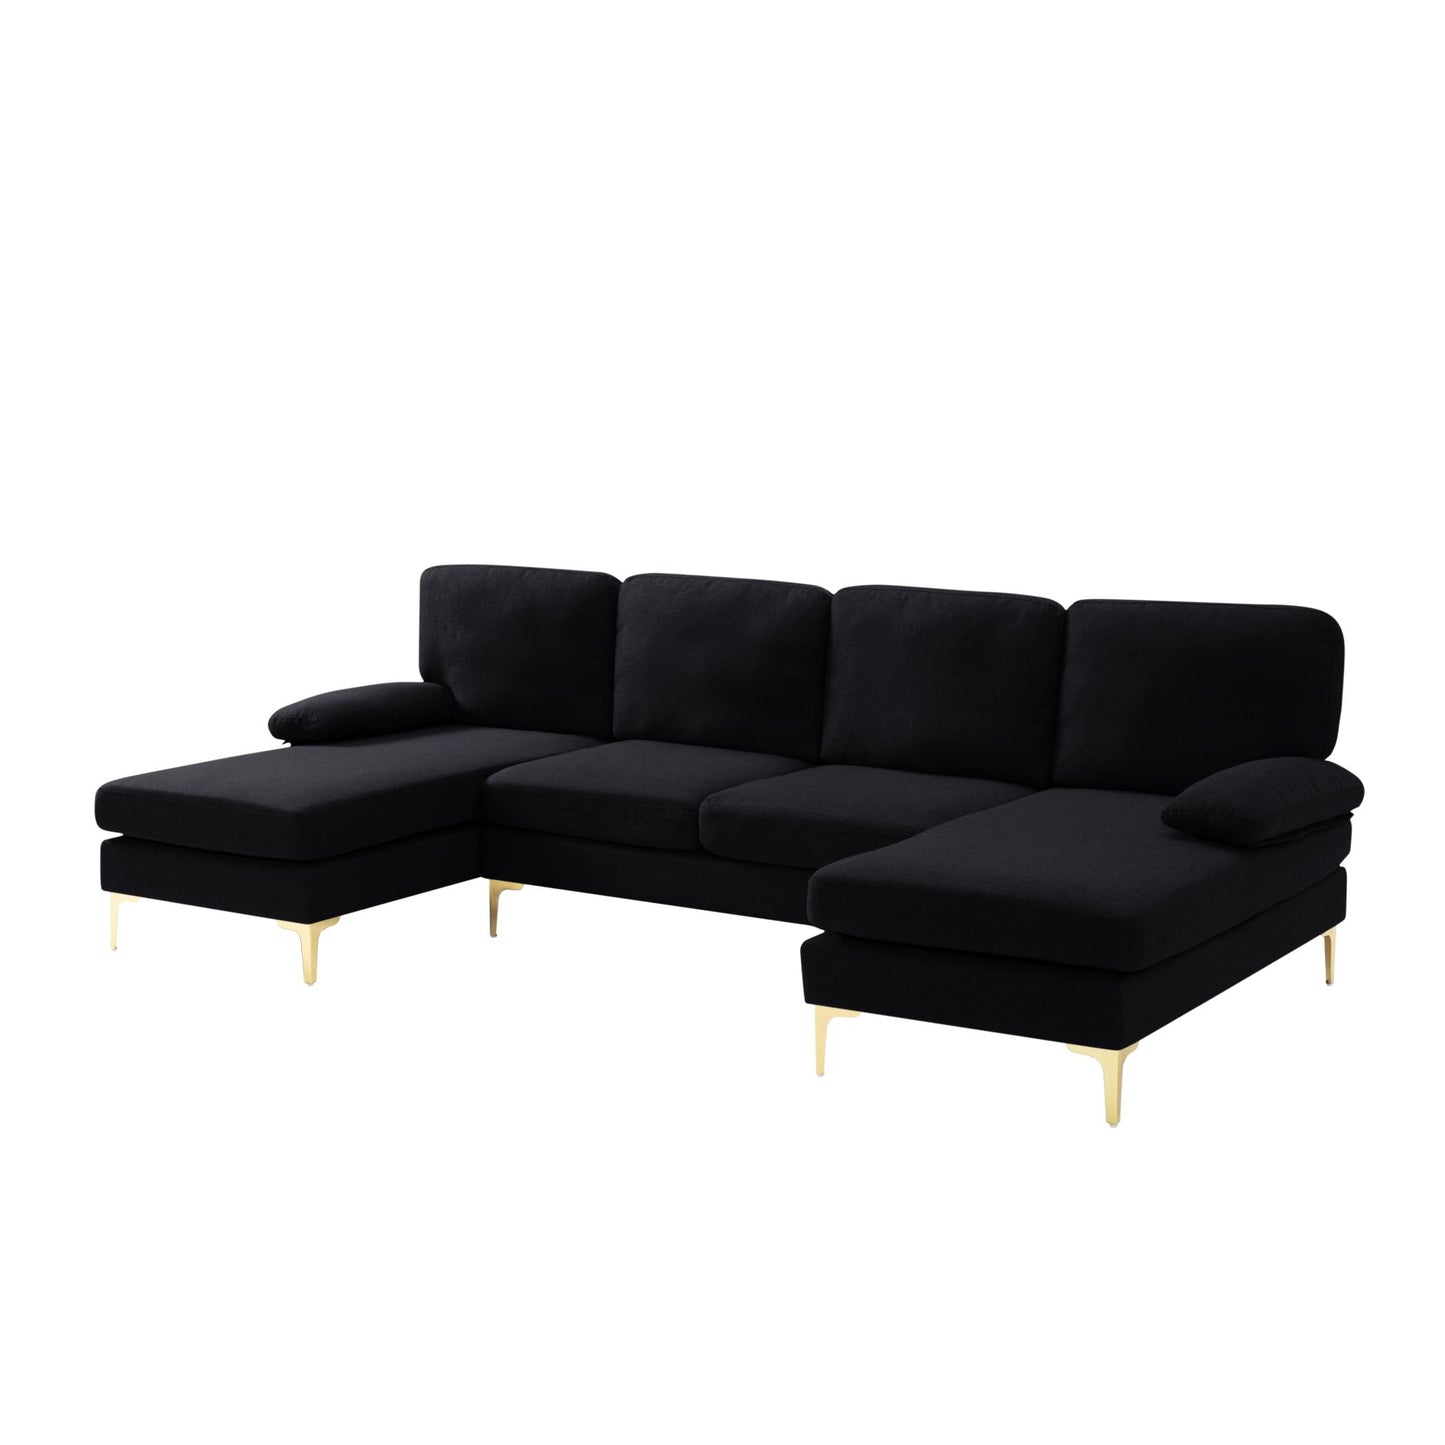 107.9” U-Shape Sectional Sofa